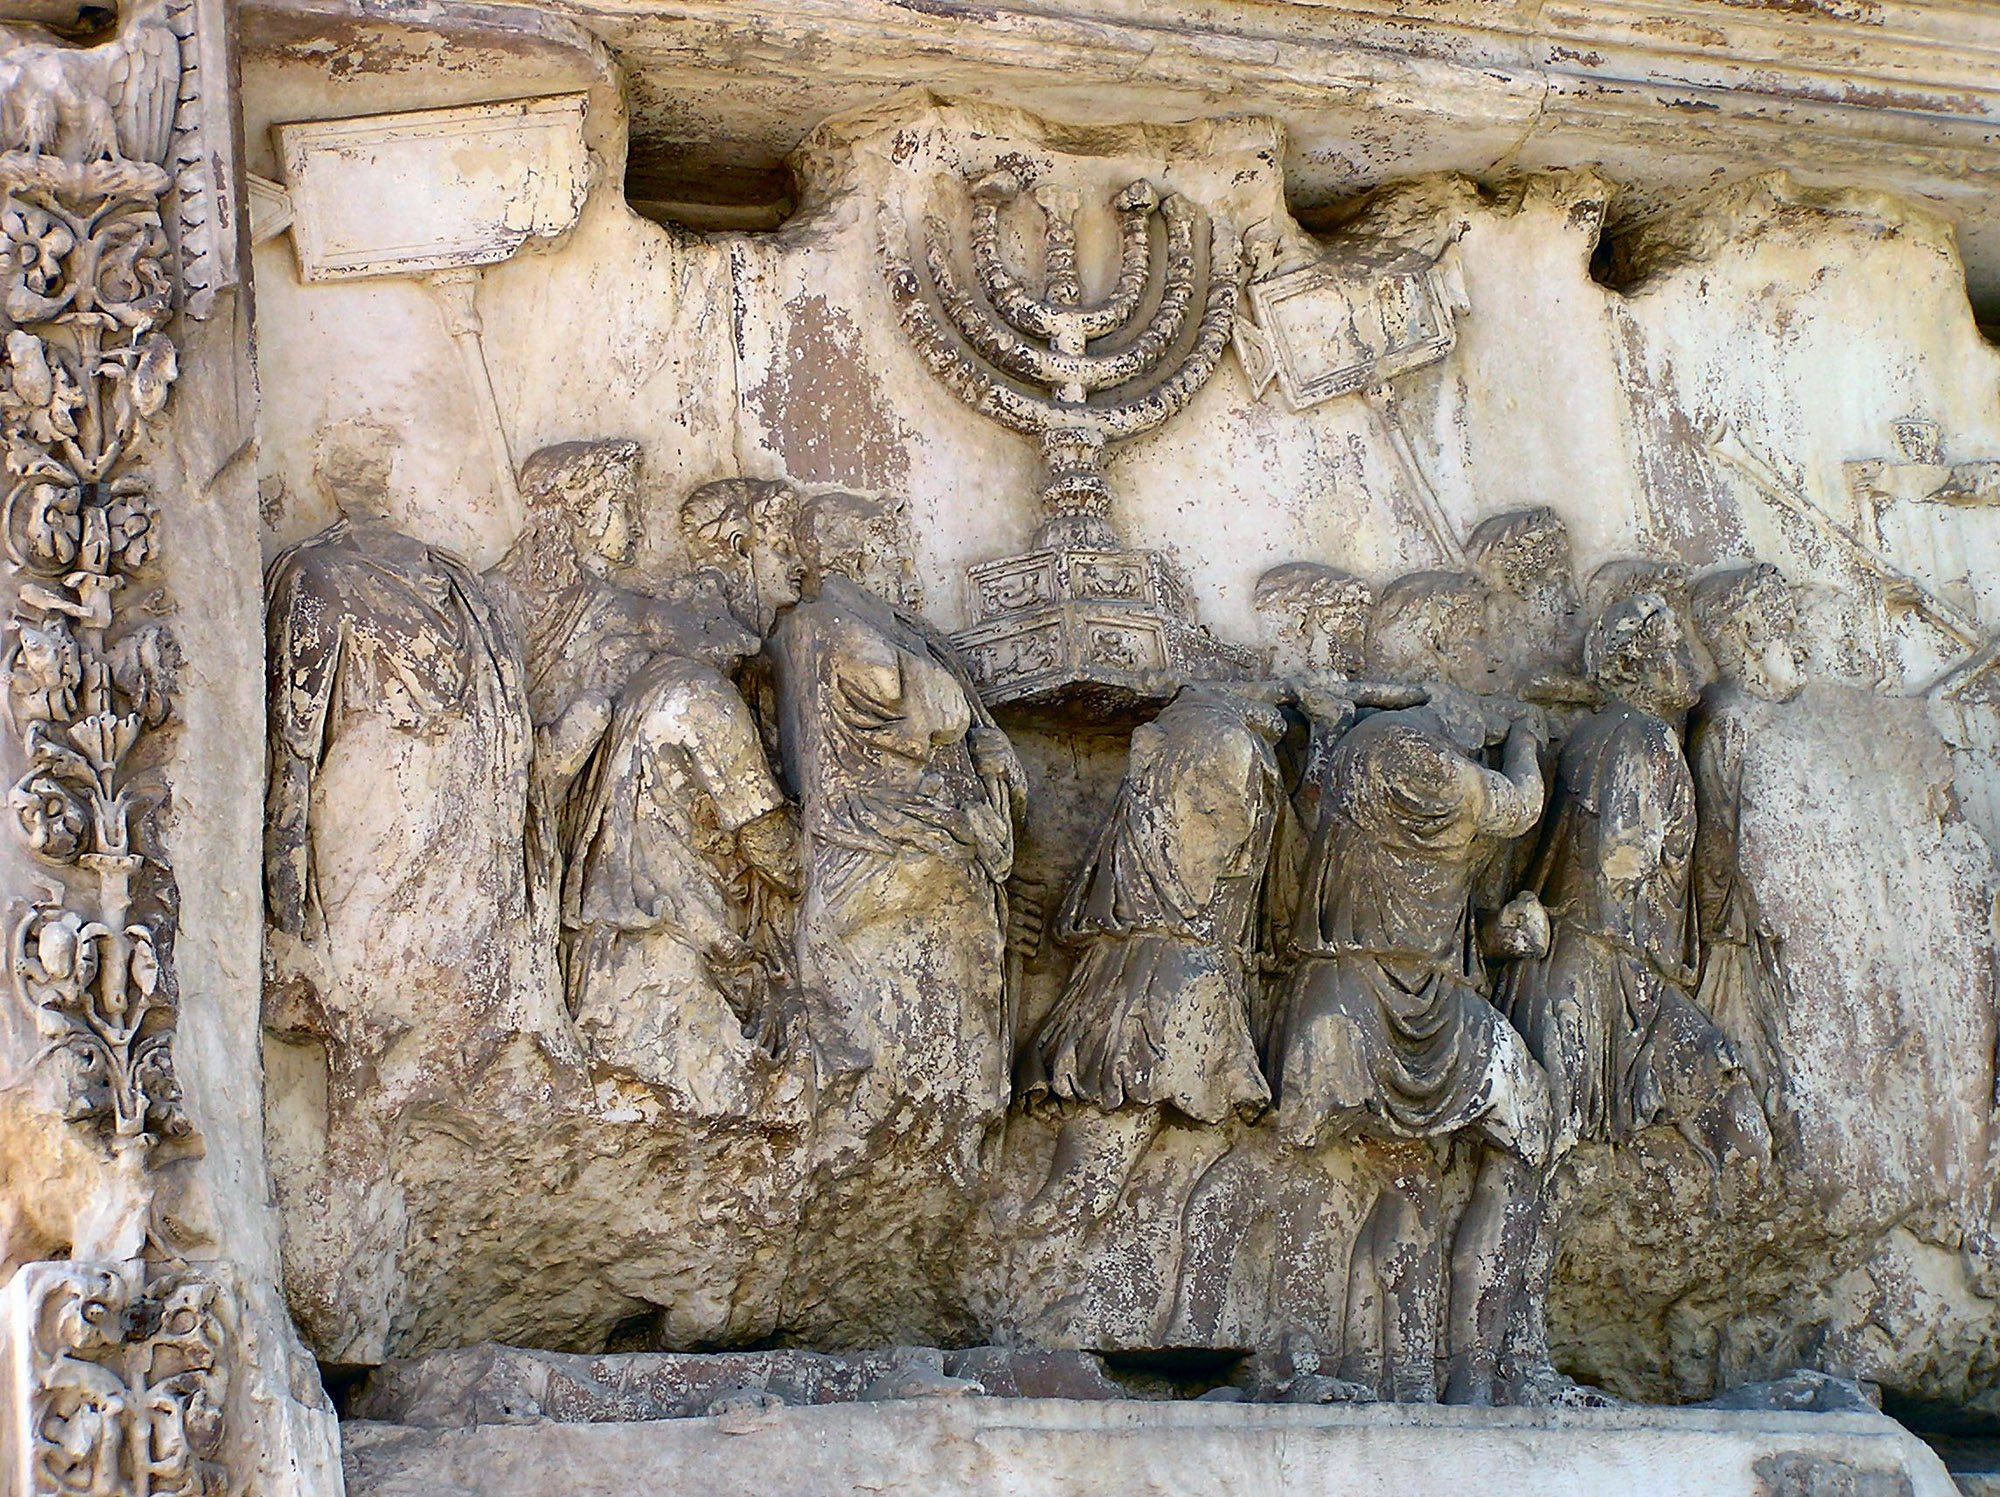 Detall de l'Arc de Tit (Roma) que mostra els tresors robats del Temple de Jerusalem durant la primera guerra judeo-romana, el 70 després de Crist.